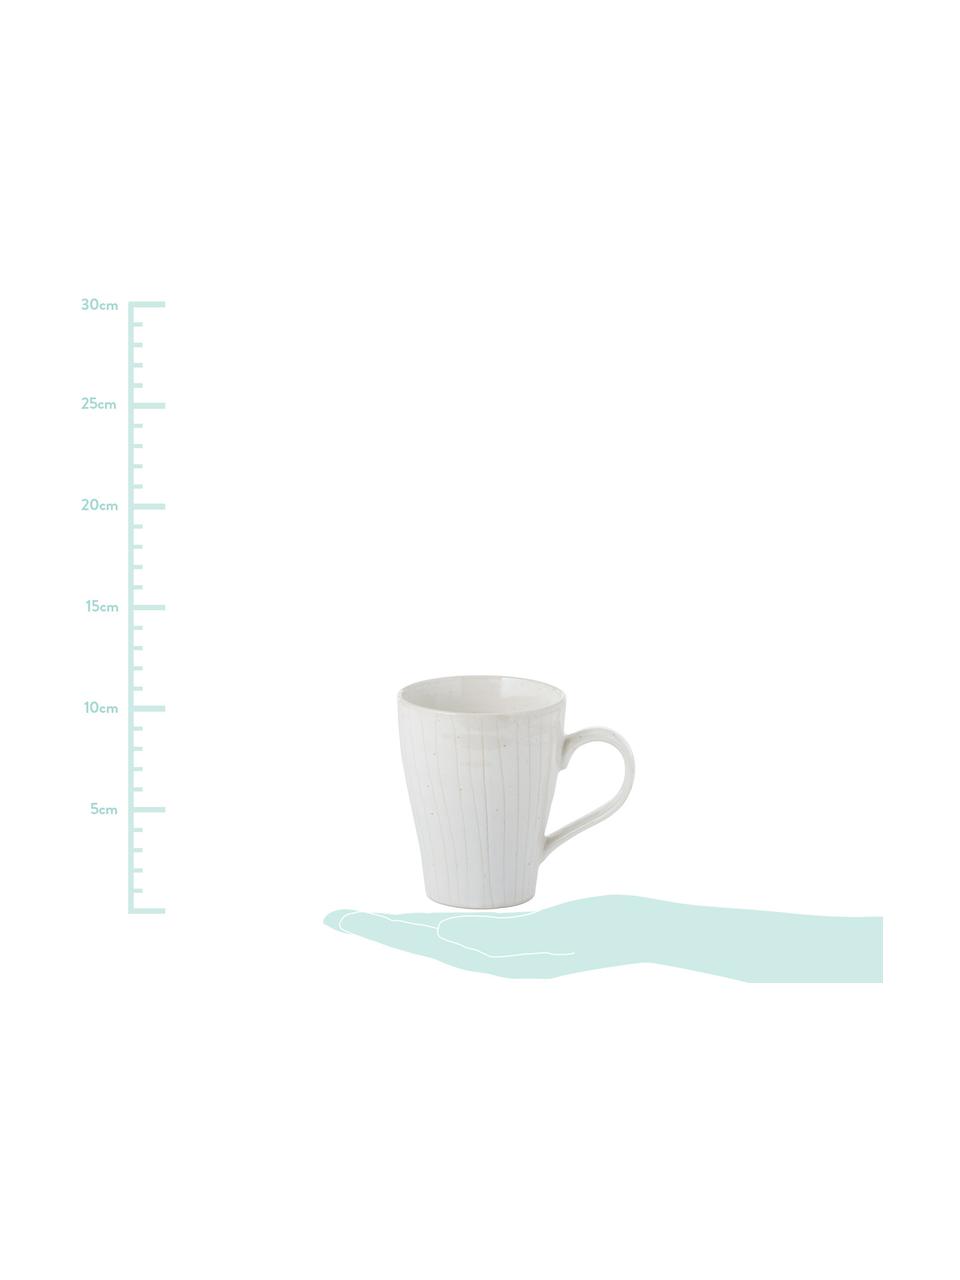 Handgemachte Tassen Copenhagen mit feinen Streifen, 6 Stück, Steingut, Elfenbein mit feinen hellbeigen Streifen, Ø 12 x H 11 cm